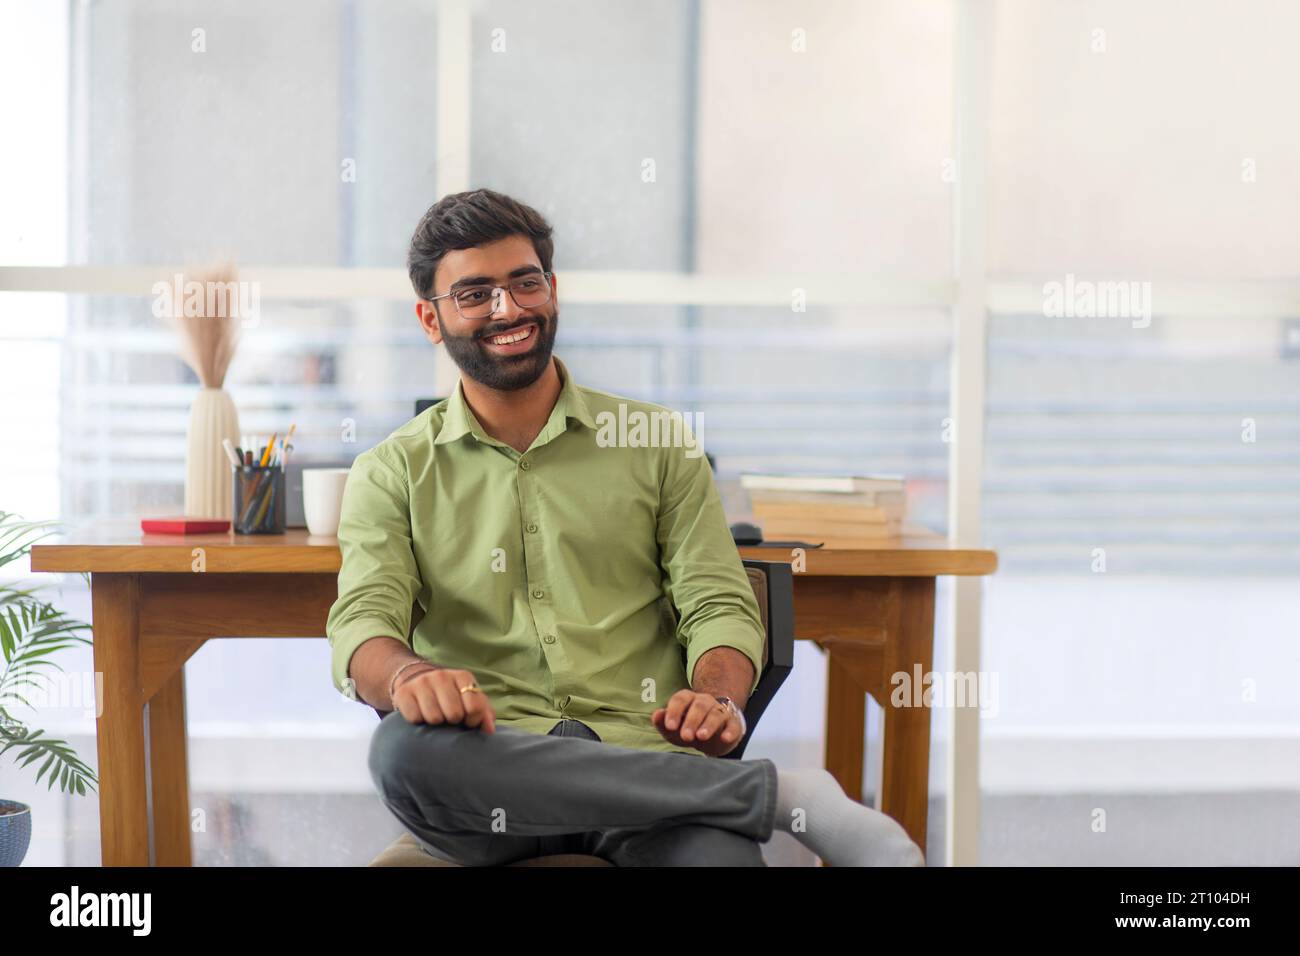 Porträt eines selbstbewussten jungen Mannes, der in seinem Heimbüro am Schreibtisch sitzt Stockfoto